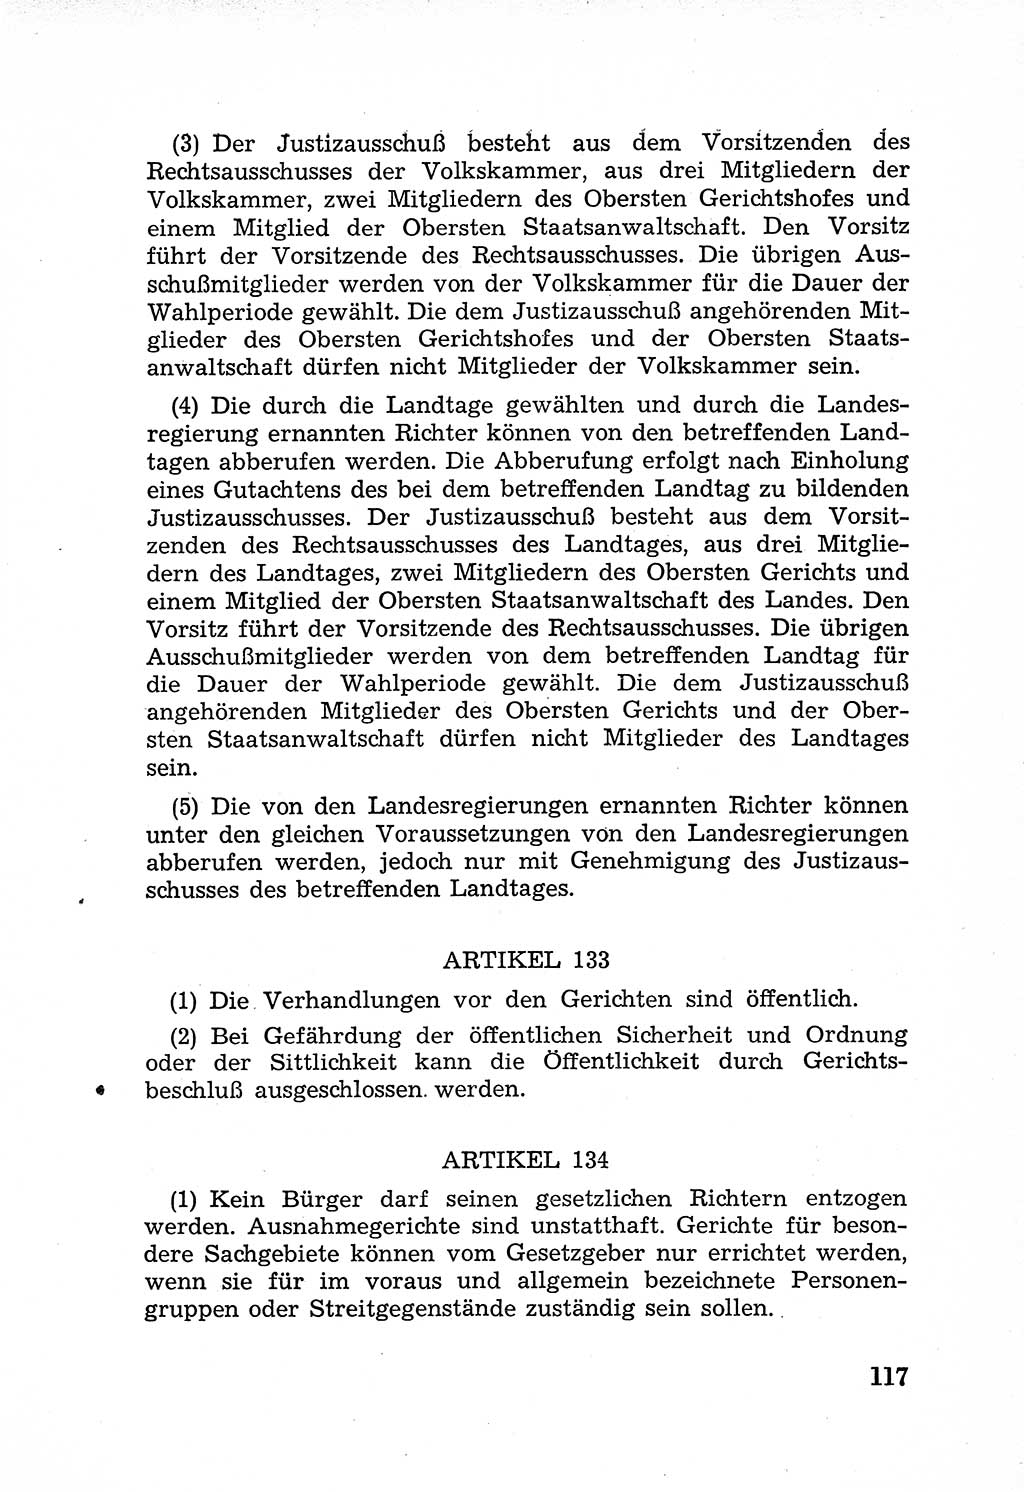 Rechtsstaat in zweierlei Hinsicht, Untersuchungsausschuß freiheitlicher Juristen (UfJ) [Bundesrepublik Deutschland (BRD)] 1956, Seite 117 (R.-St. UfJ BRD 1956, S. 117)